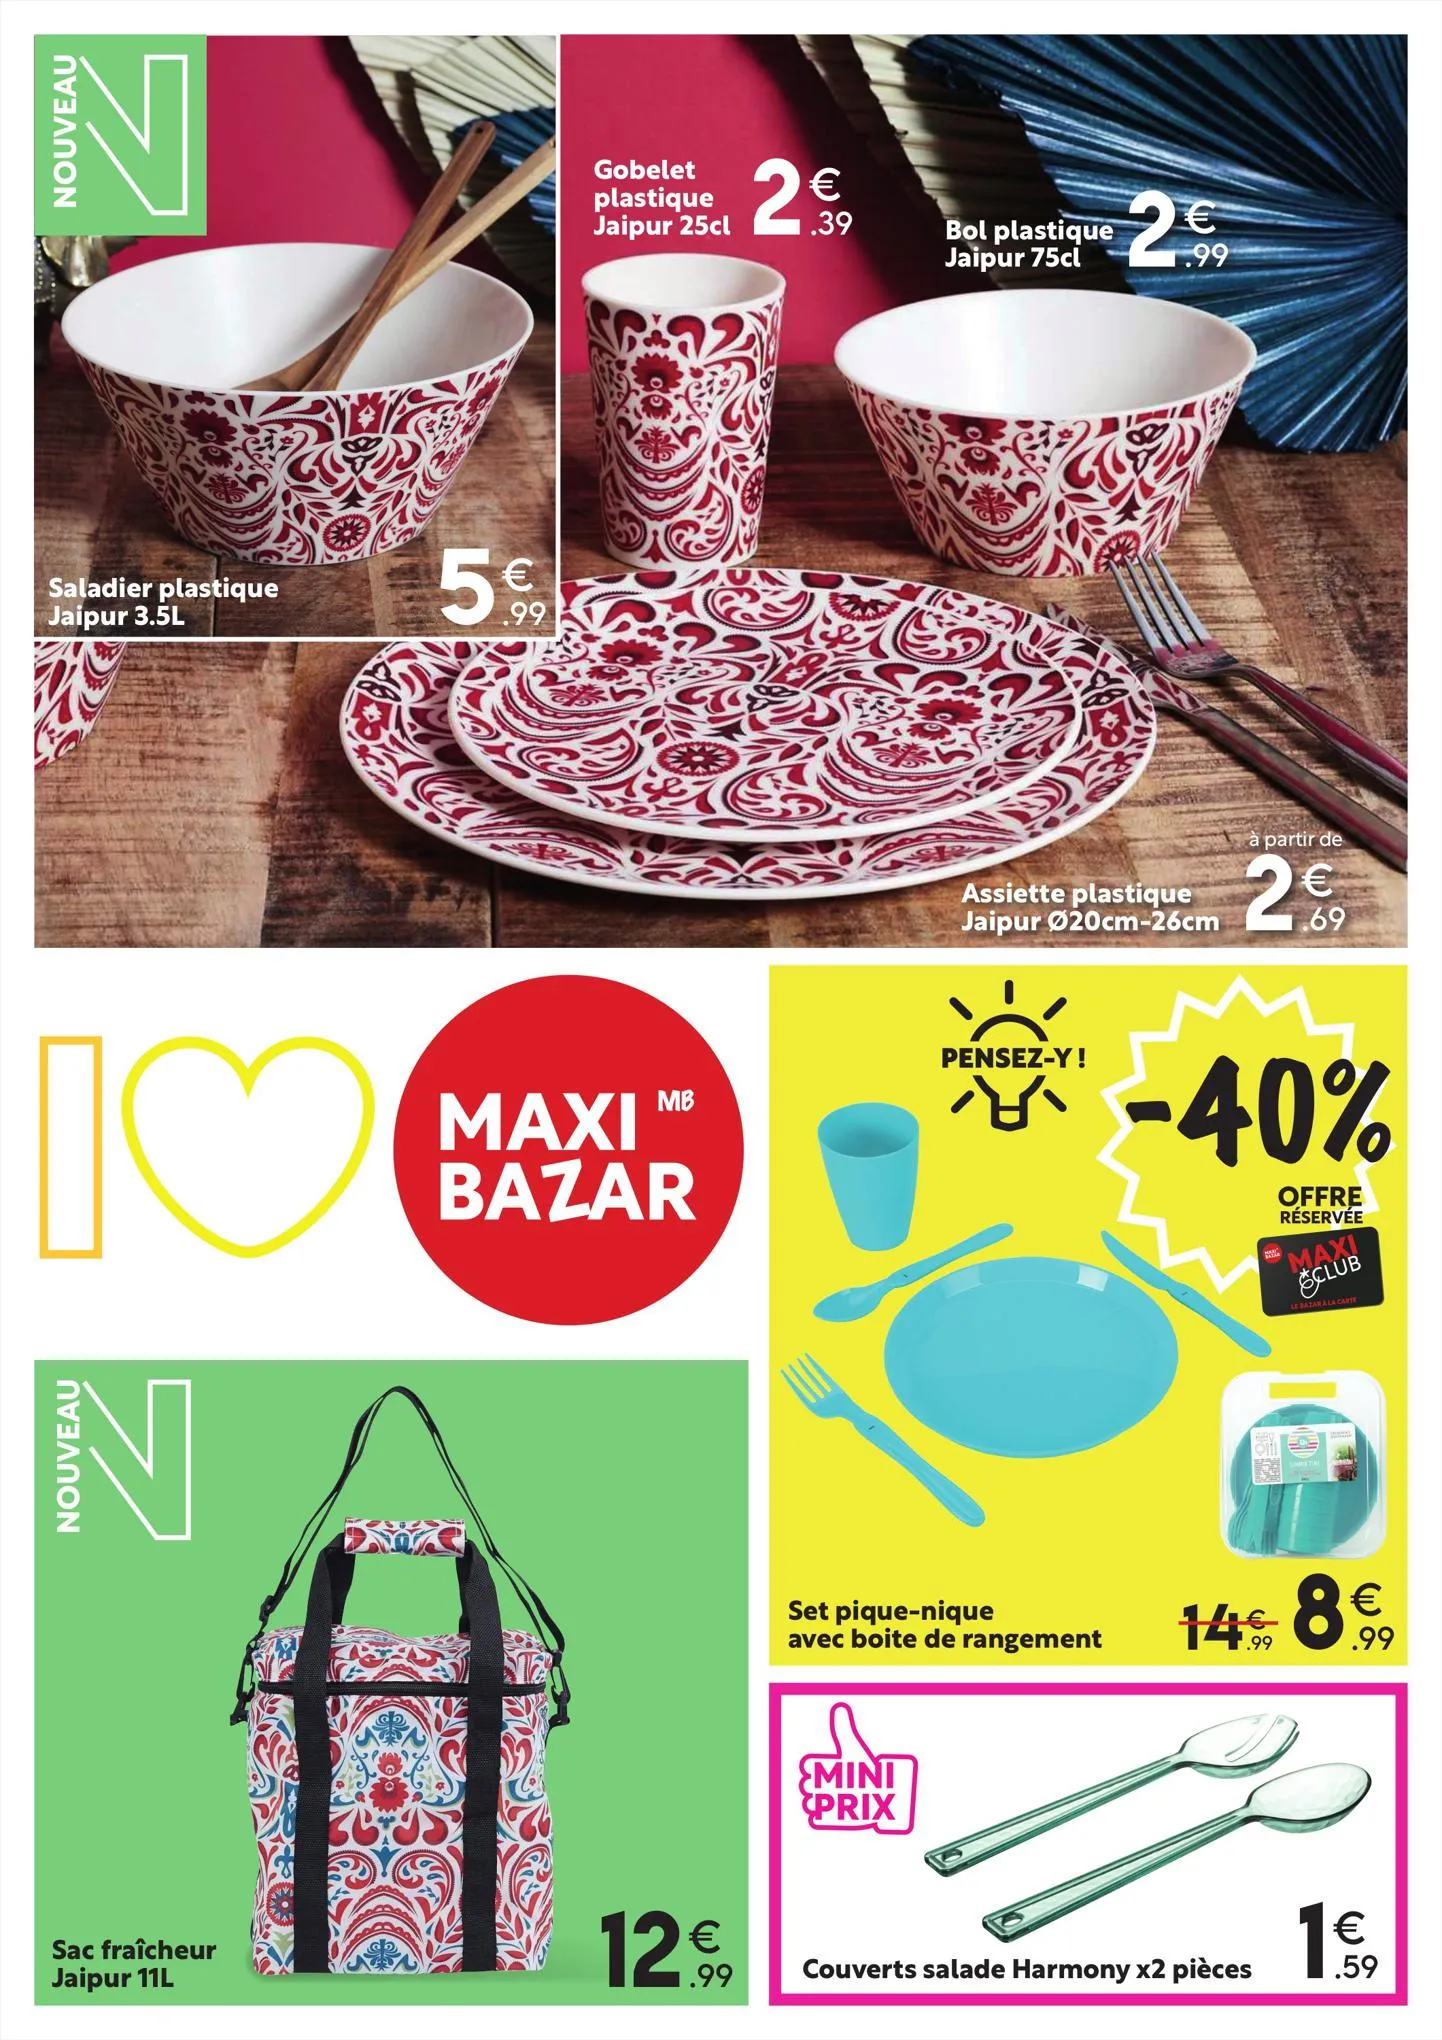 Catalogue Catalogue Maxi Bazar, page 00005